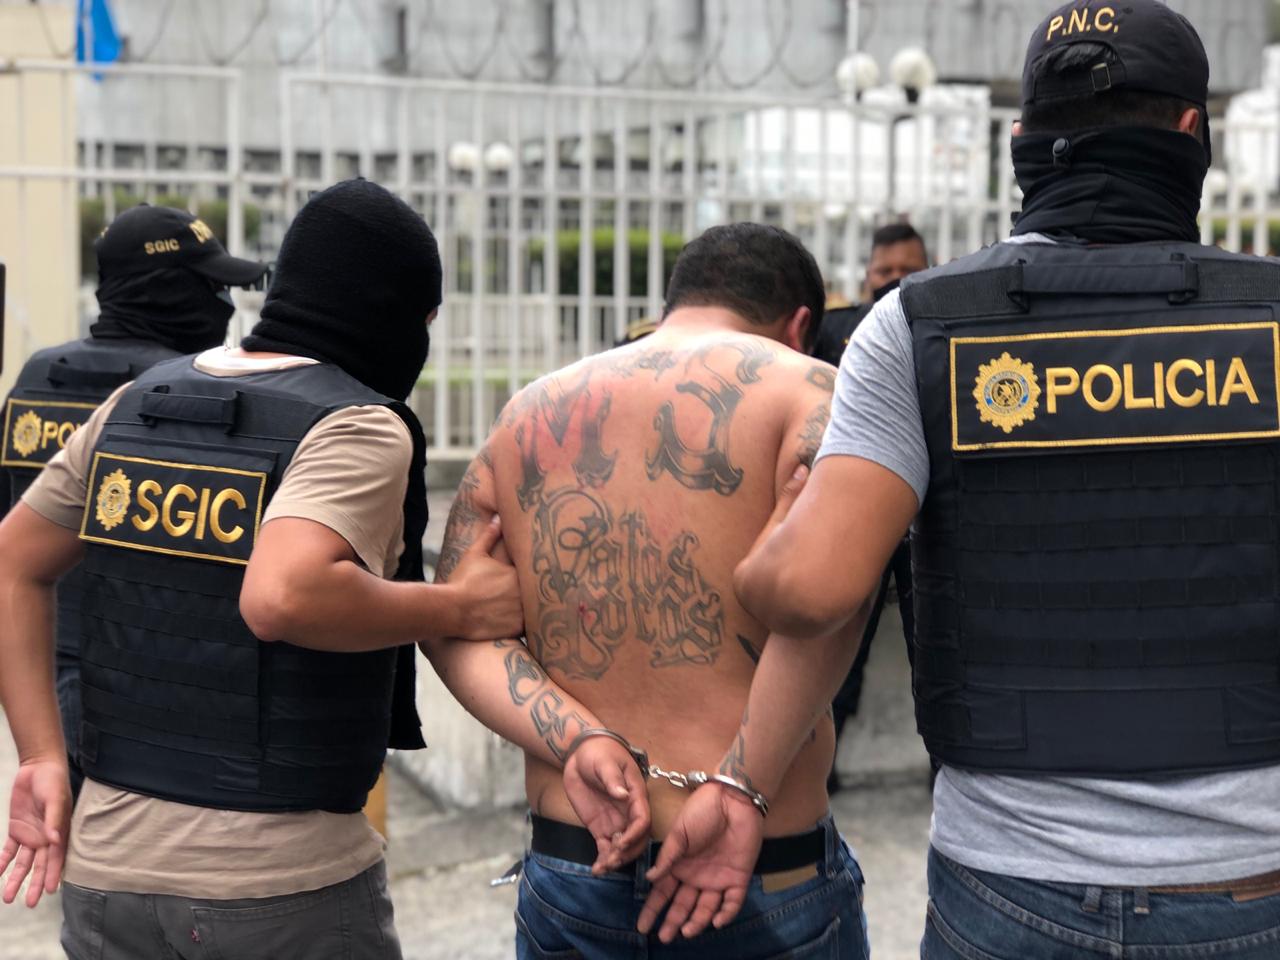 El supuesto pandillero fue detenido en ruta hacia el Atlántico con bolsitas de mariguana y municiones. Foto Prensa Libre: PNC